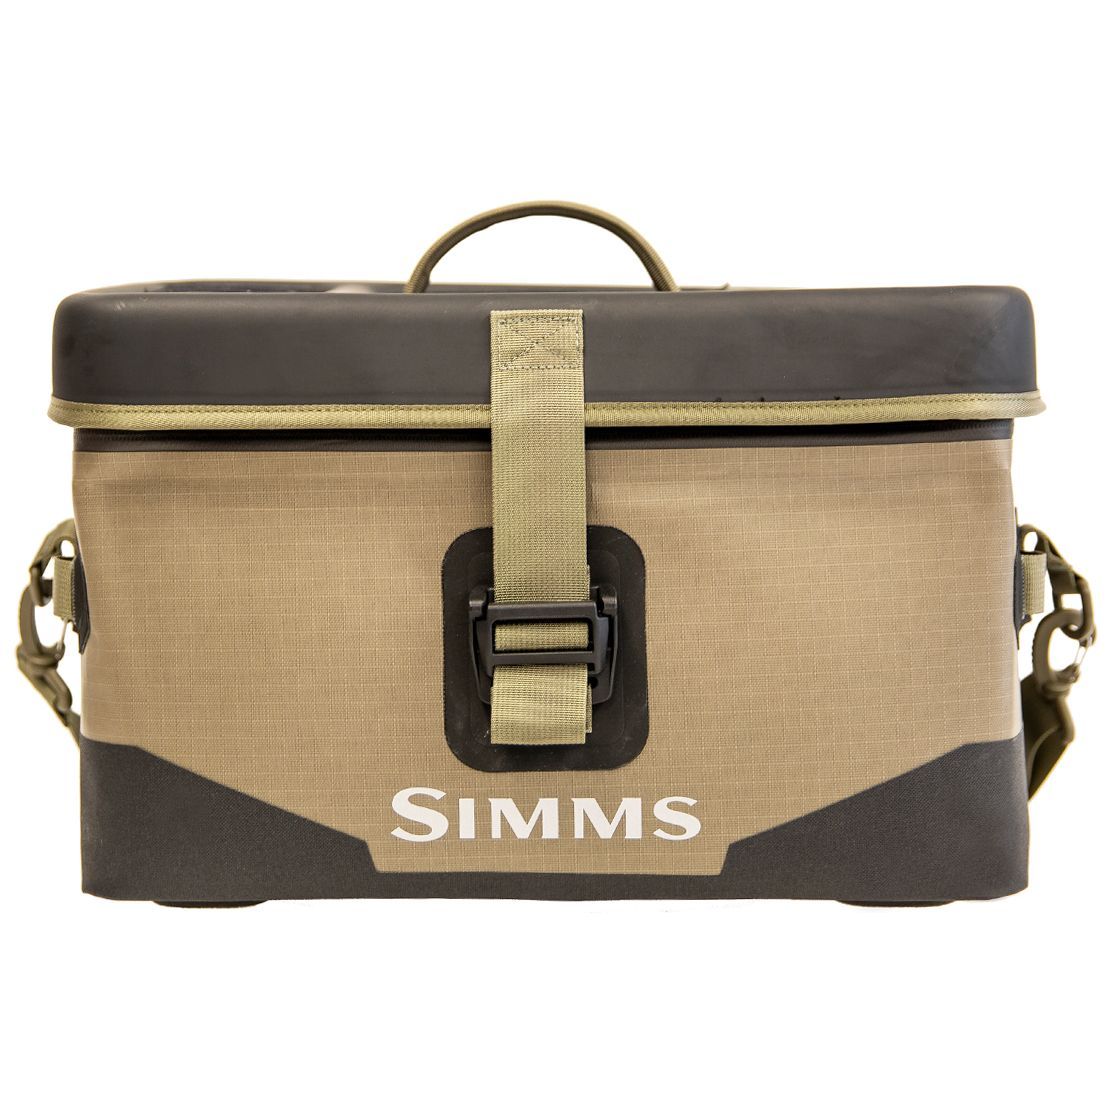 Simms Dry Creek Boat Bag Tan Image 1